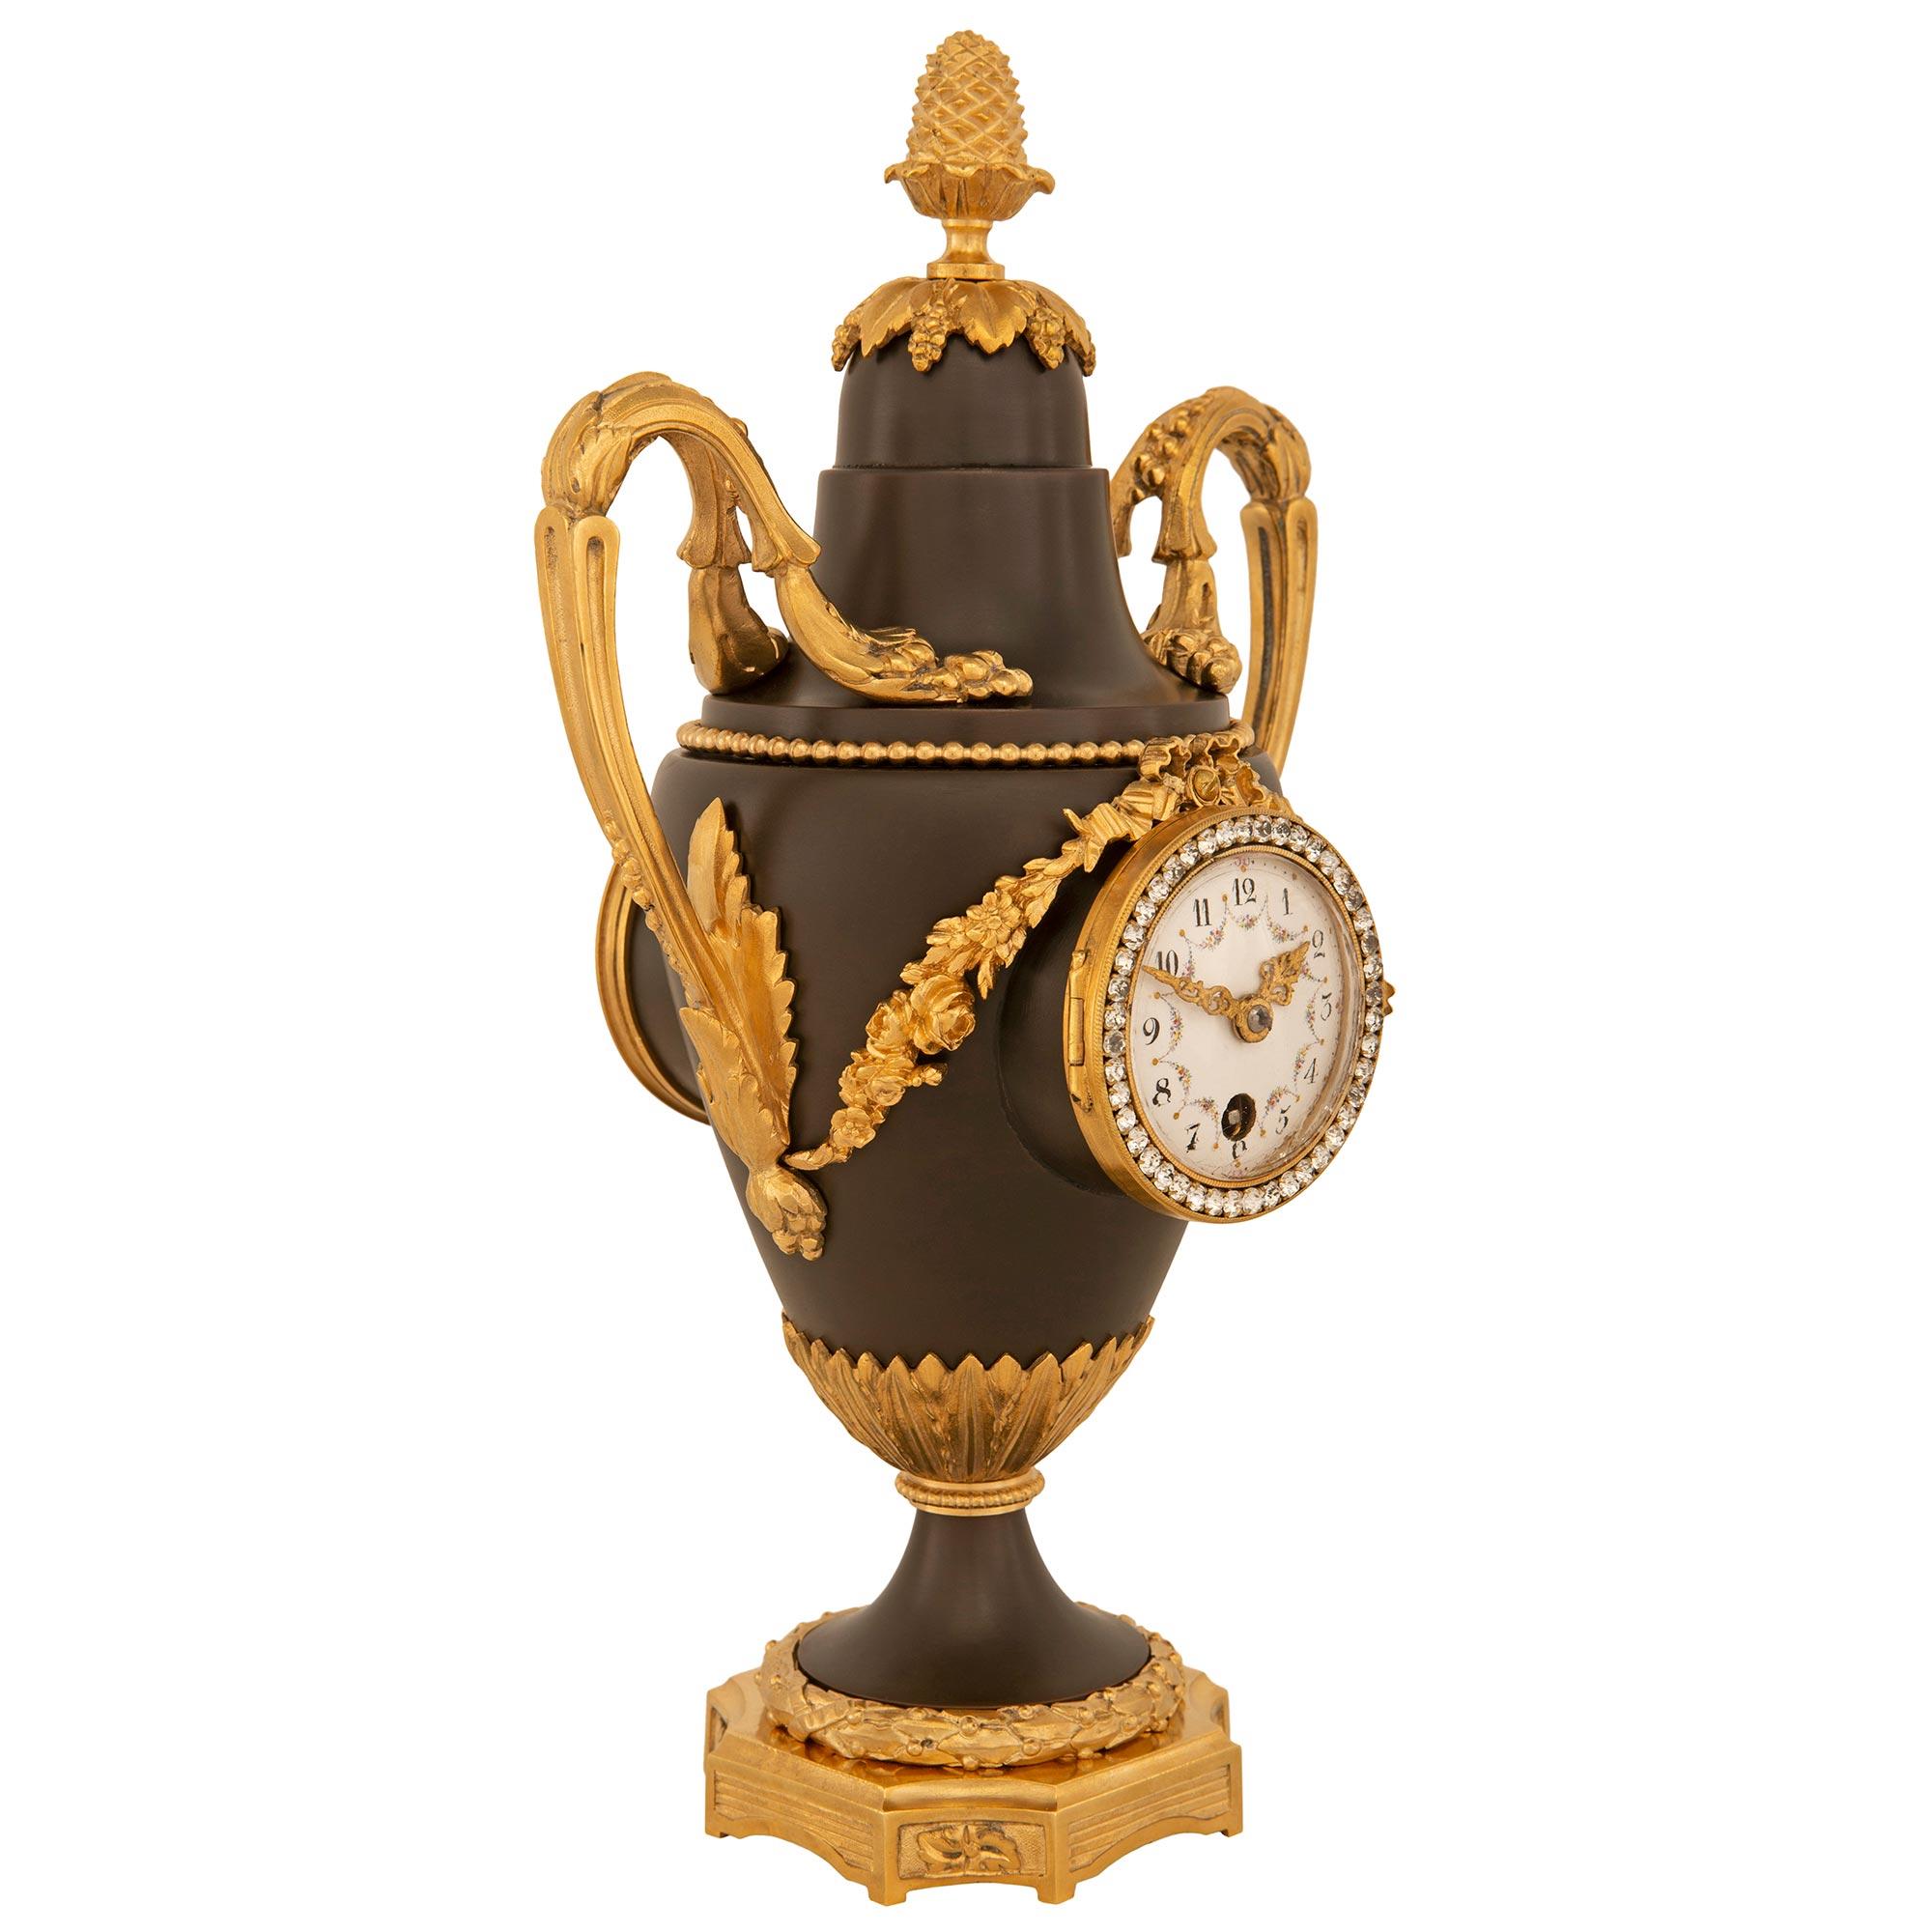 Elégante pendule en bronze patiné et bronze doré de style Louis XVI de la fin du XIXe siècle. L'horloge en forme d'urne de prospérité est surélevée par une base carrée aux angles concaves et aux panneaux en retrait. Les panneaux concaves sont